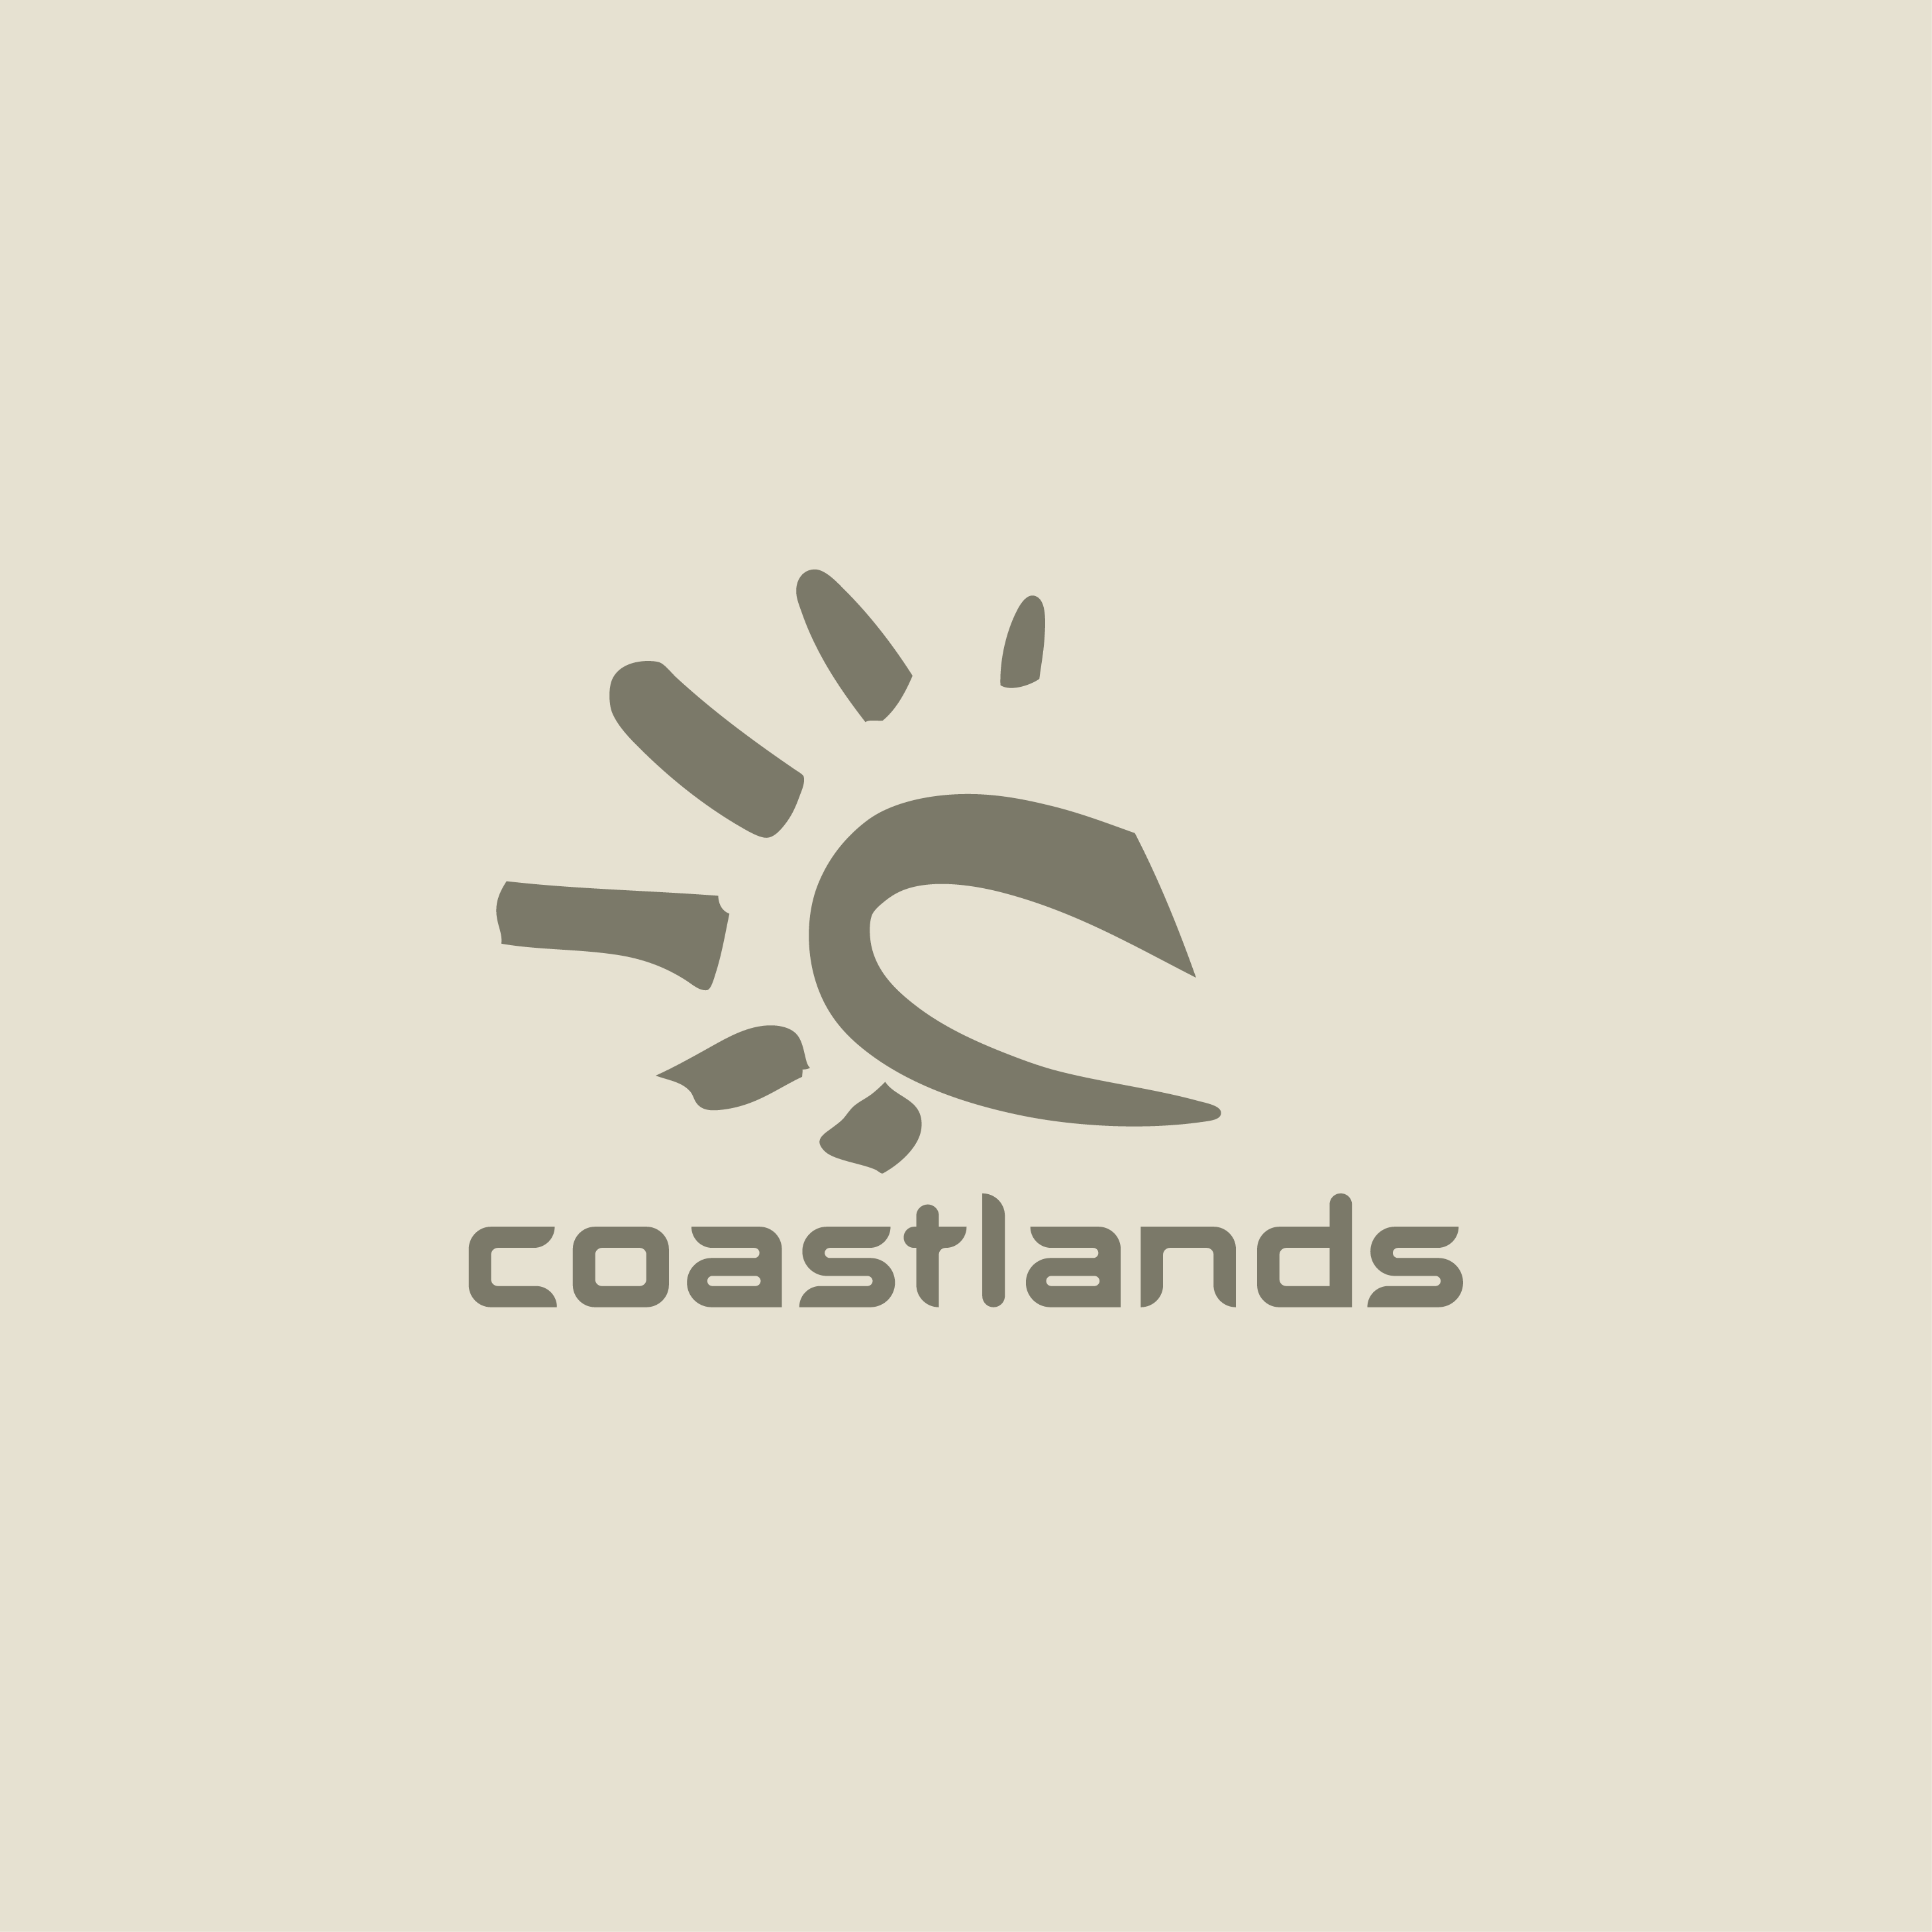 Coastlands Master Logo